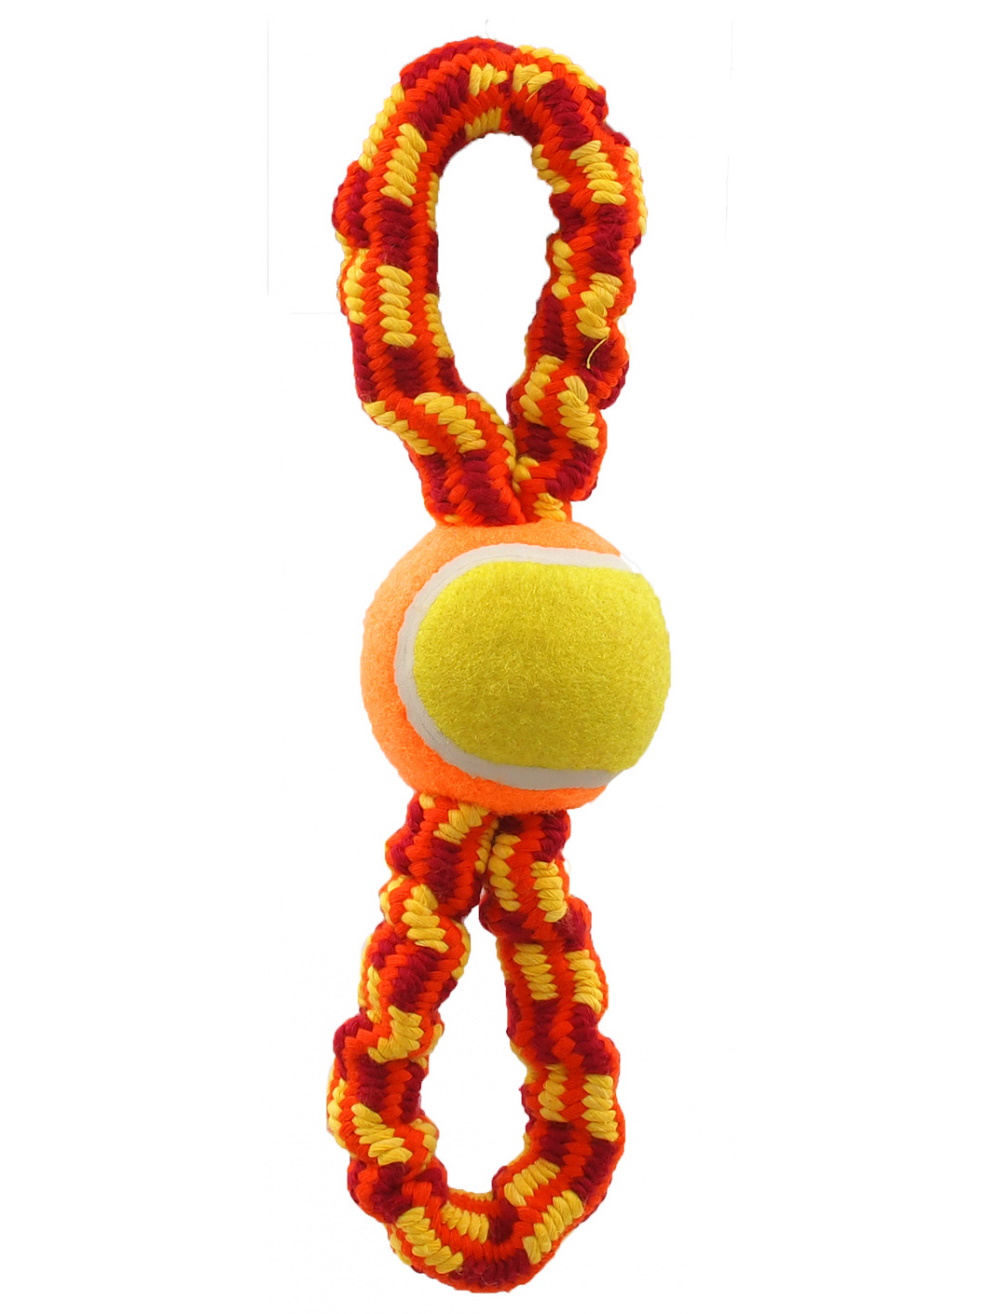 Игрушка веревочная разноцветная теннисный мяч с 2 петлями 27 см Dog Fantasy